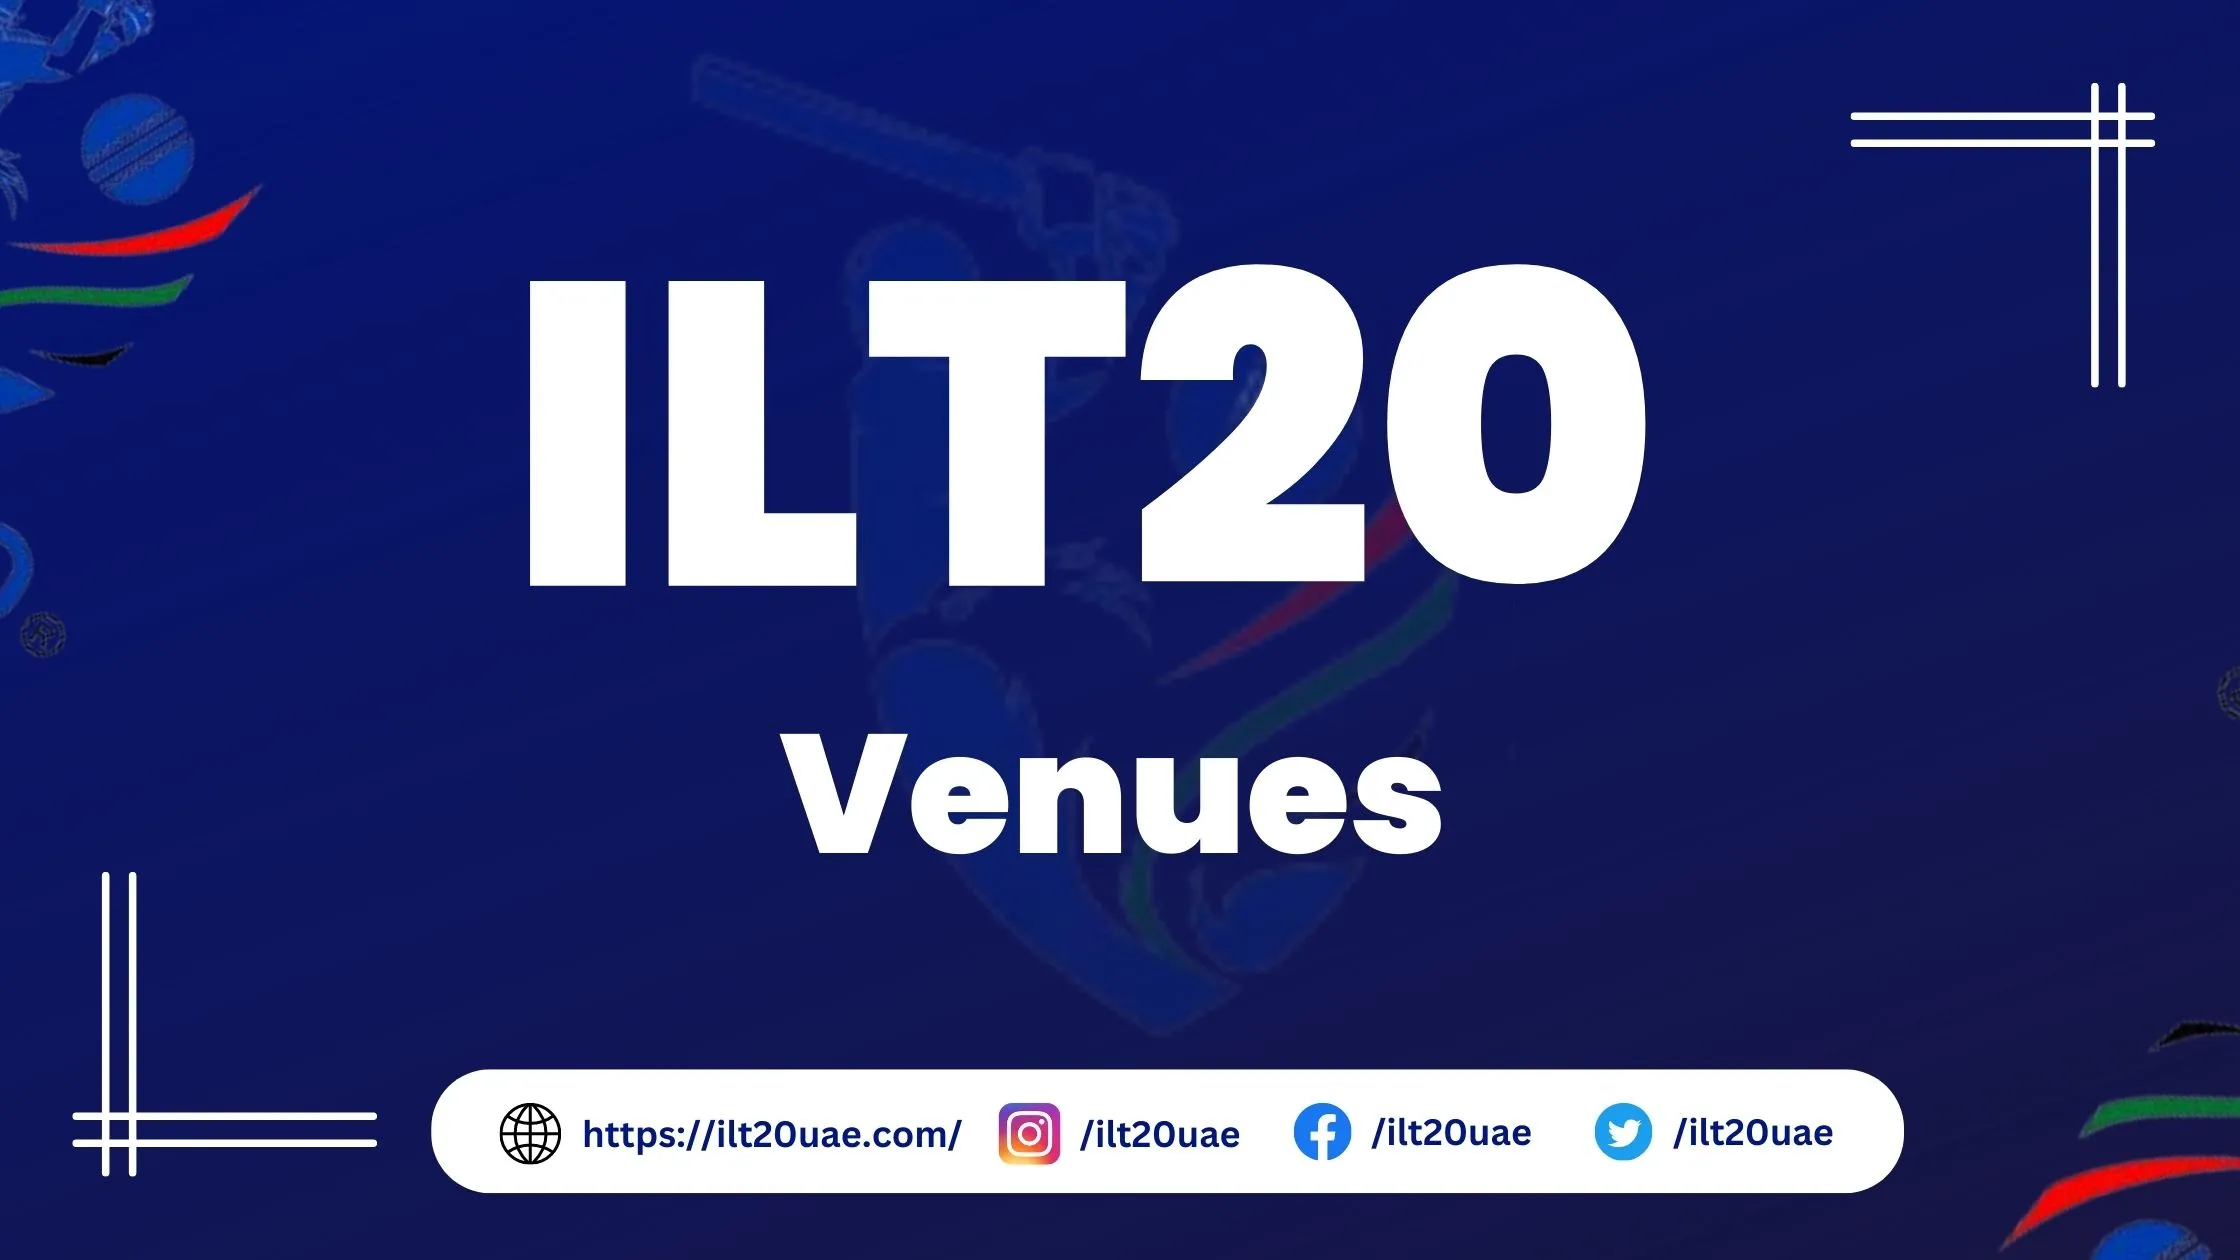 ILT20 venues